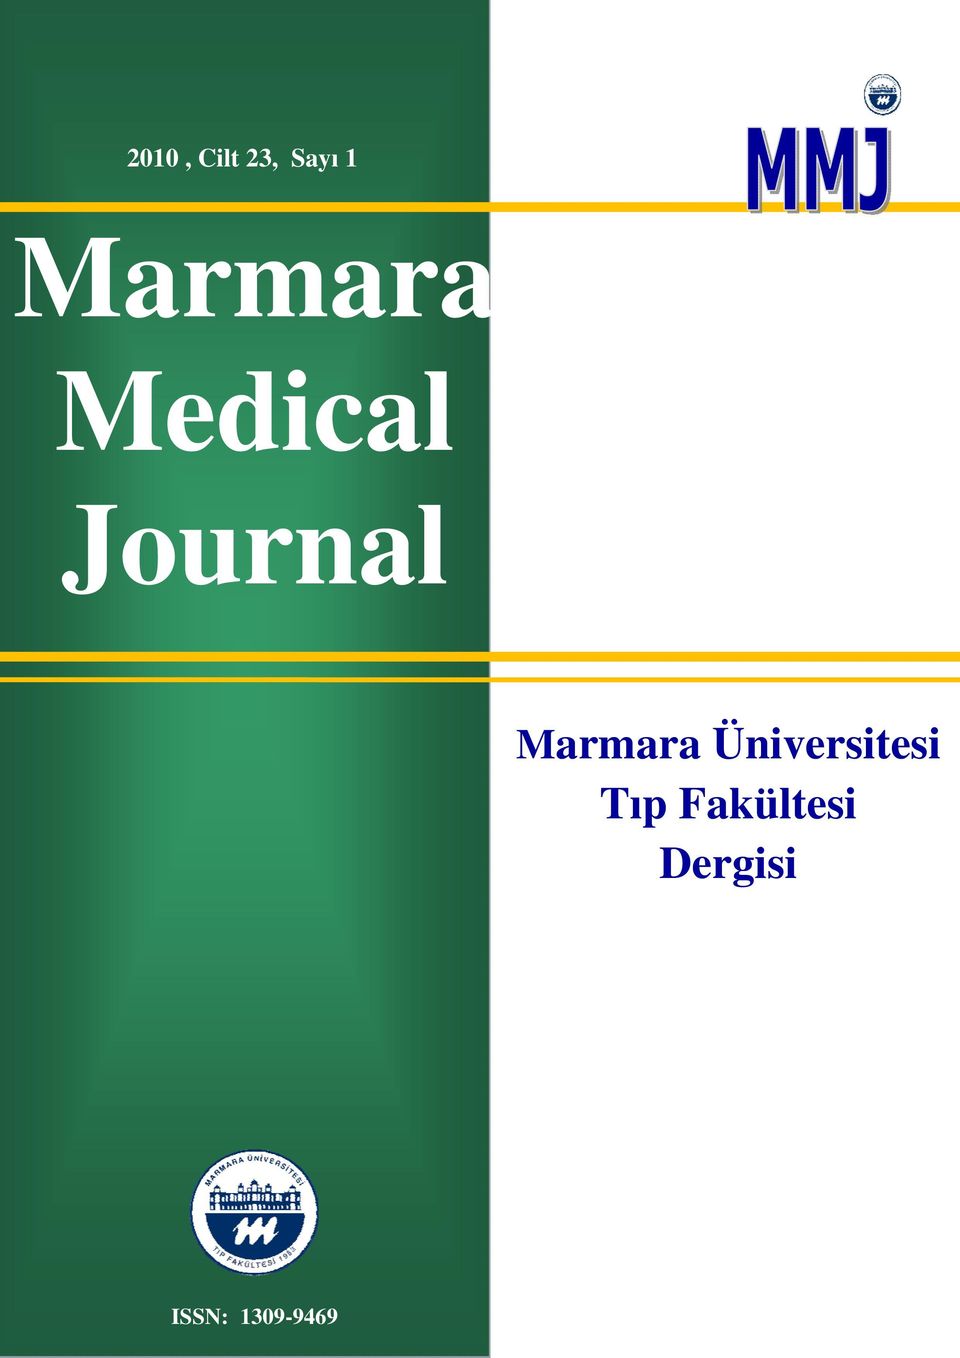 Marmara Üniversitesi Tıp